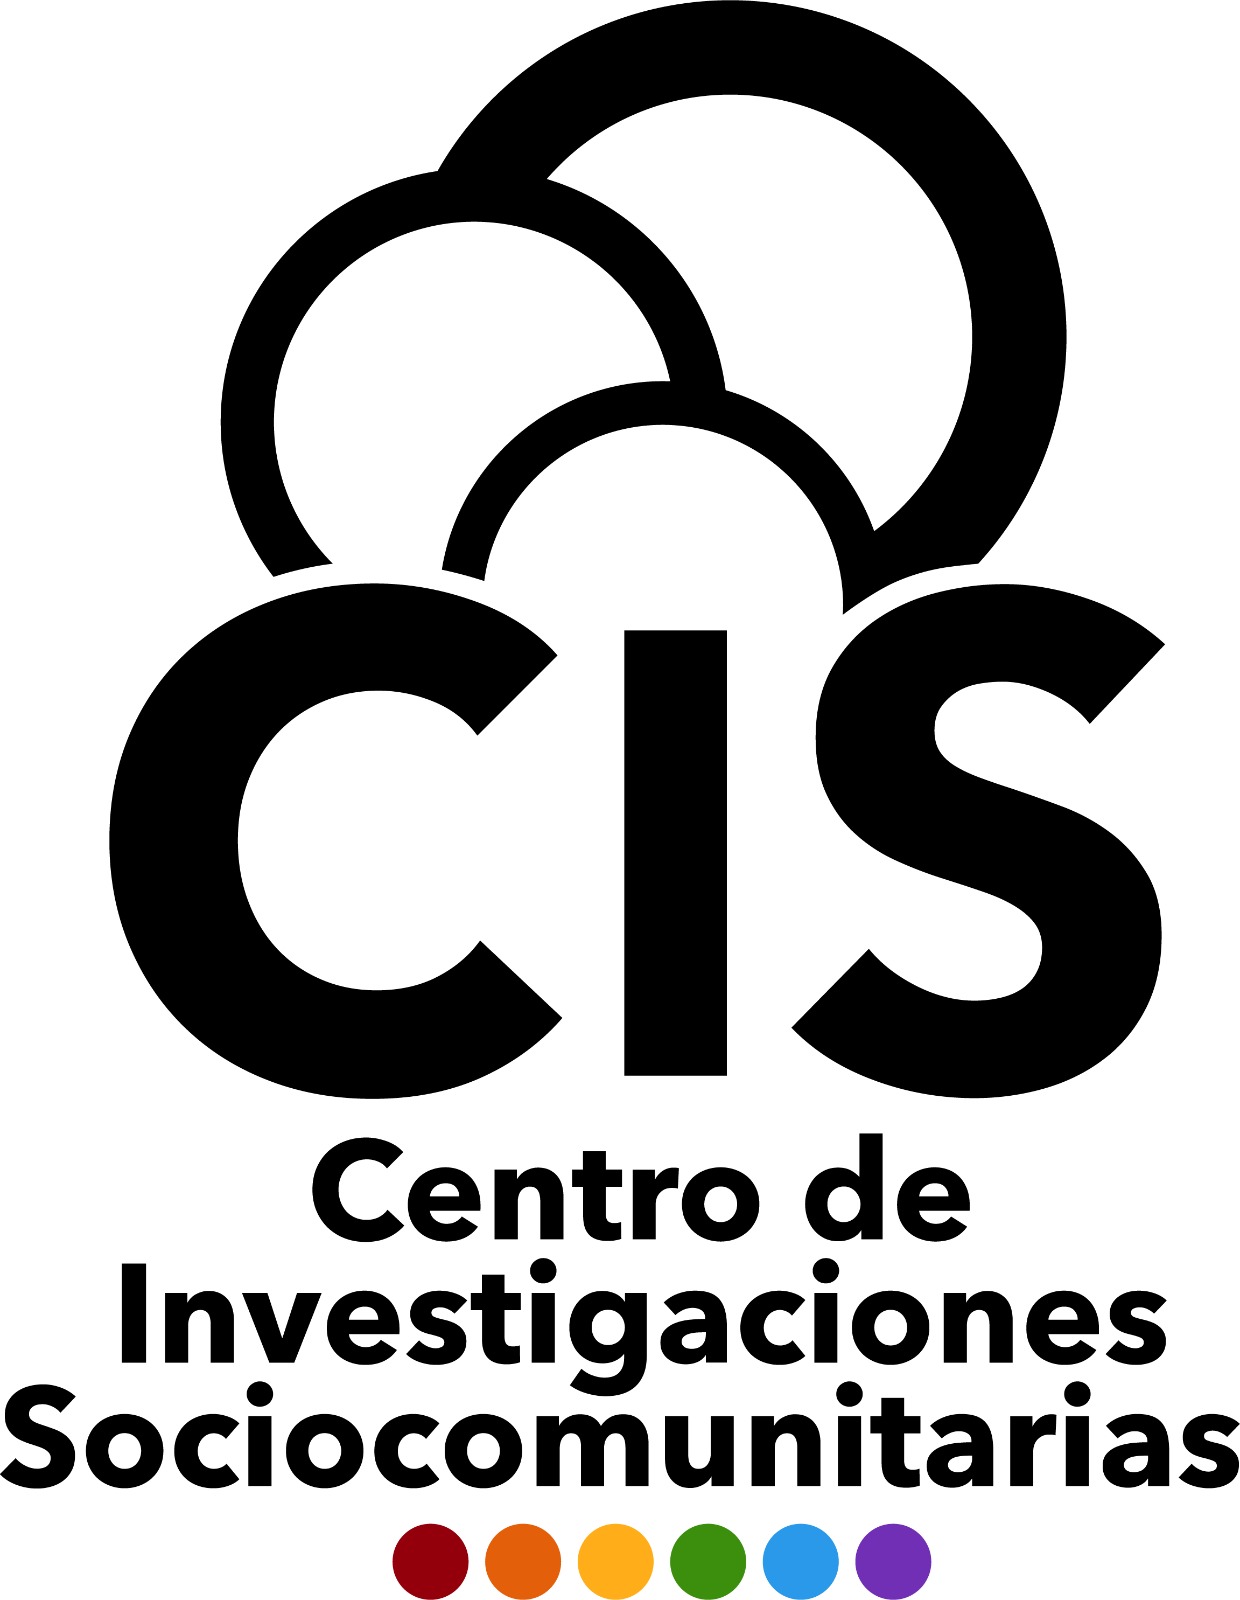 Centro de Investigaciones Sociocomunitarias